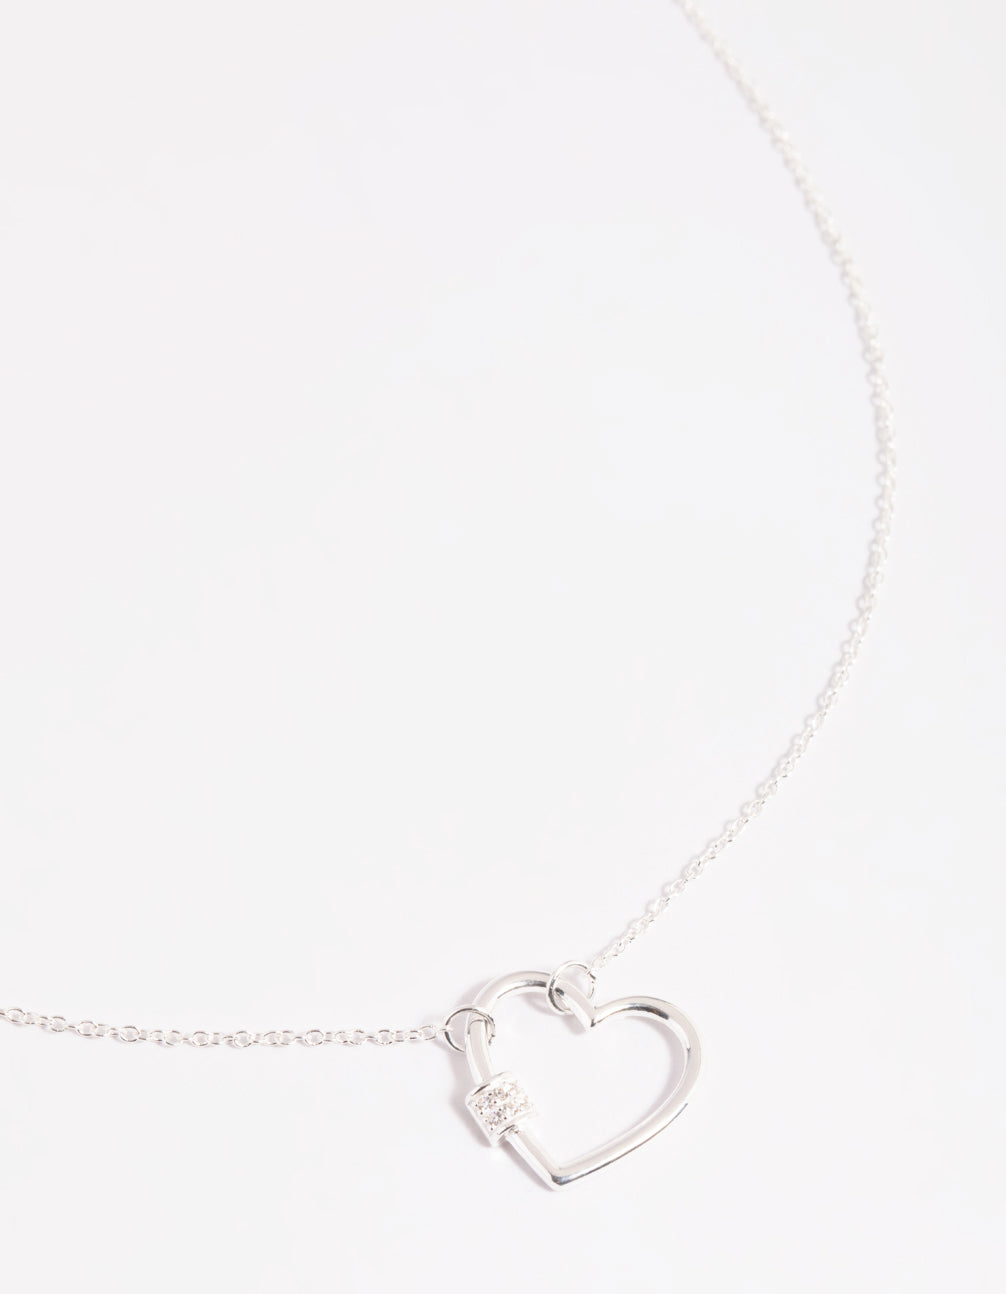 Heart in Cross Necklace in Sterling Silver